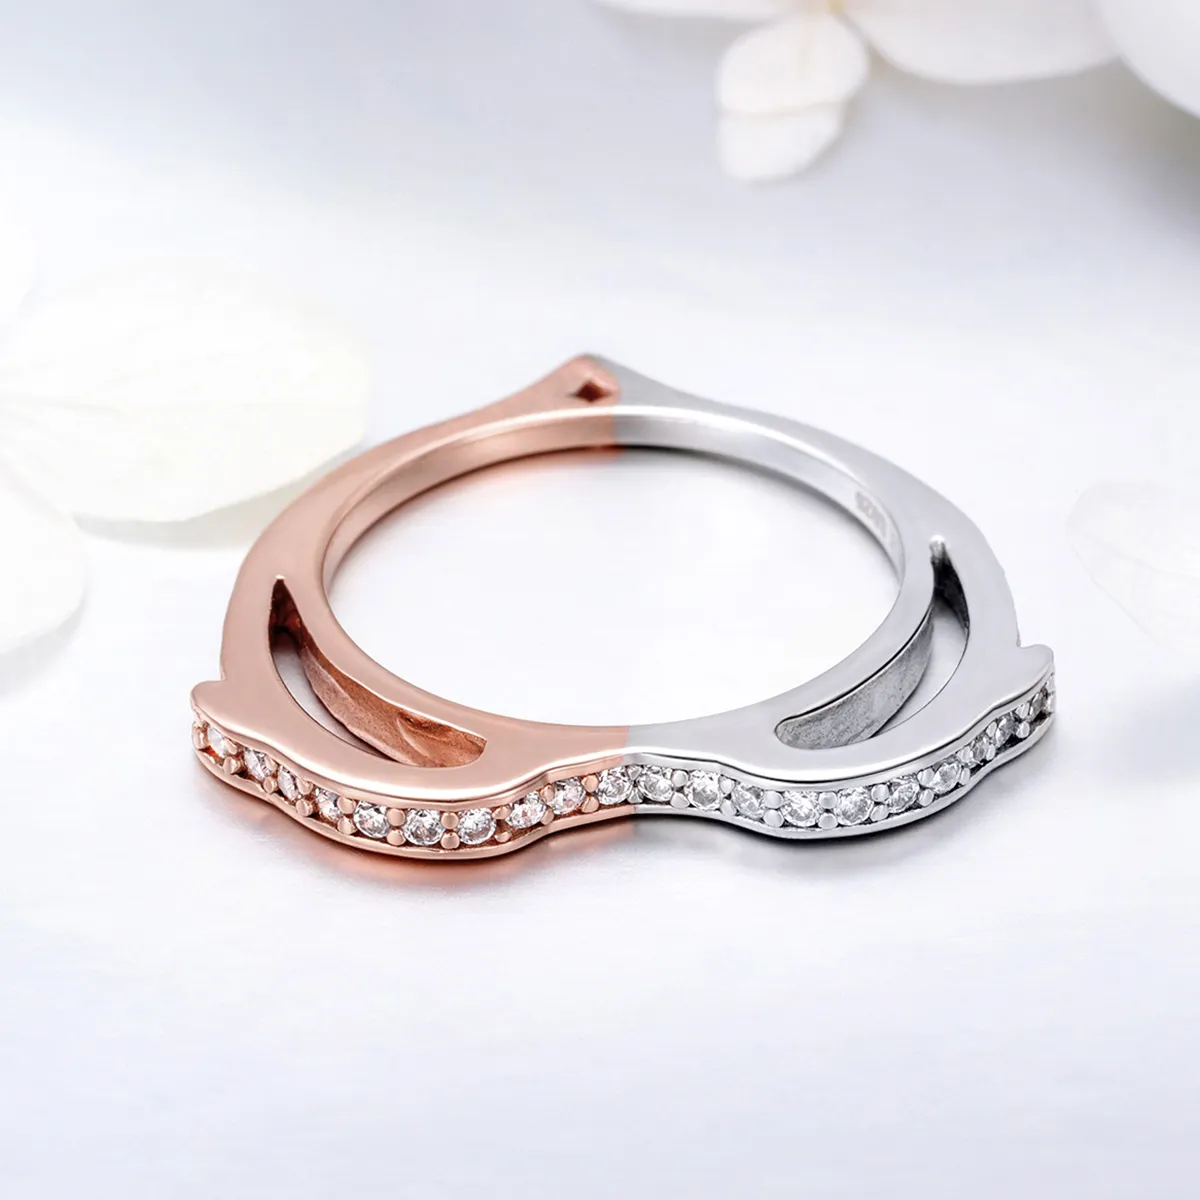 Pandora Style Silver & Rose Gold Ocean Spirit Ring - SCR418